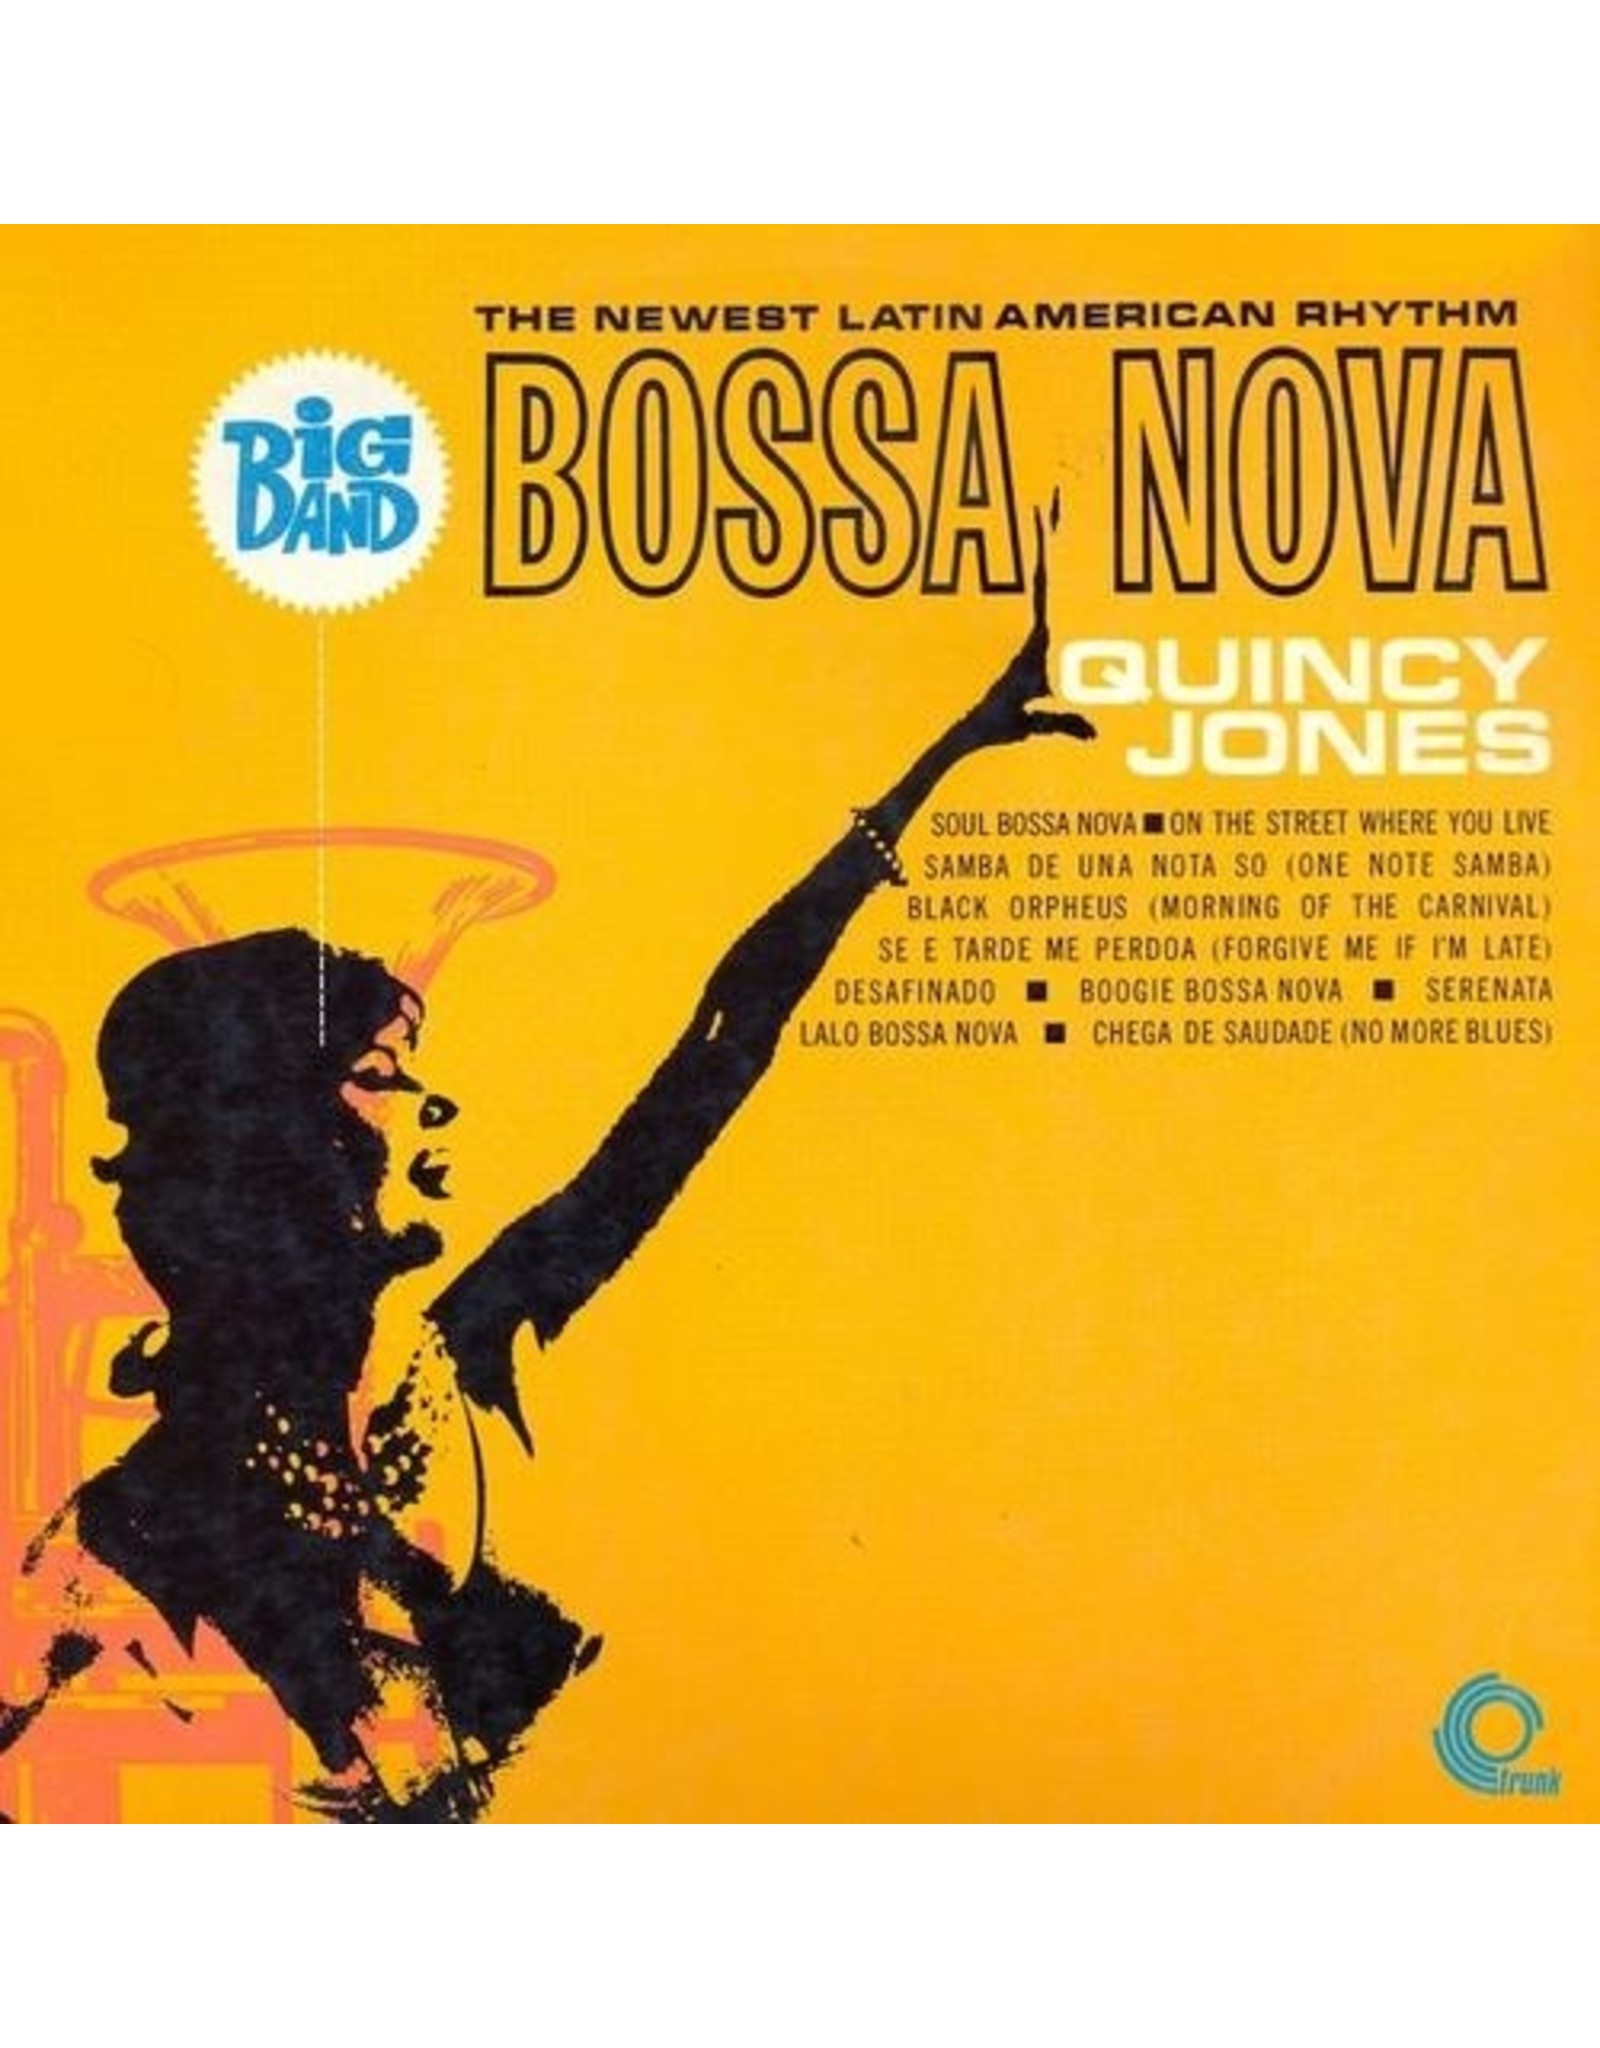 New Vinyl Quincy Jones - Big Band Bossa Nova (Colored) LP